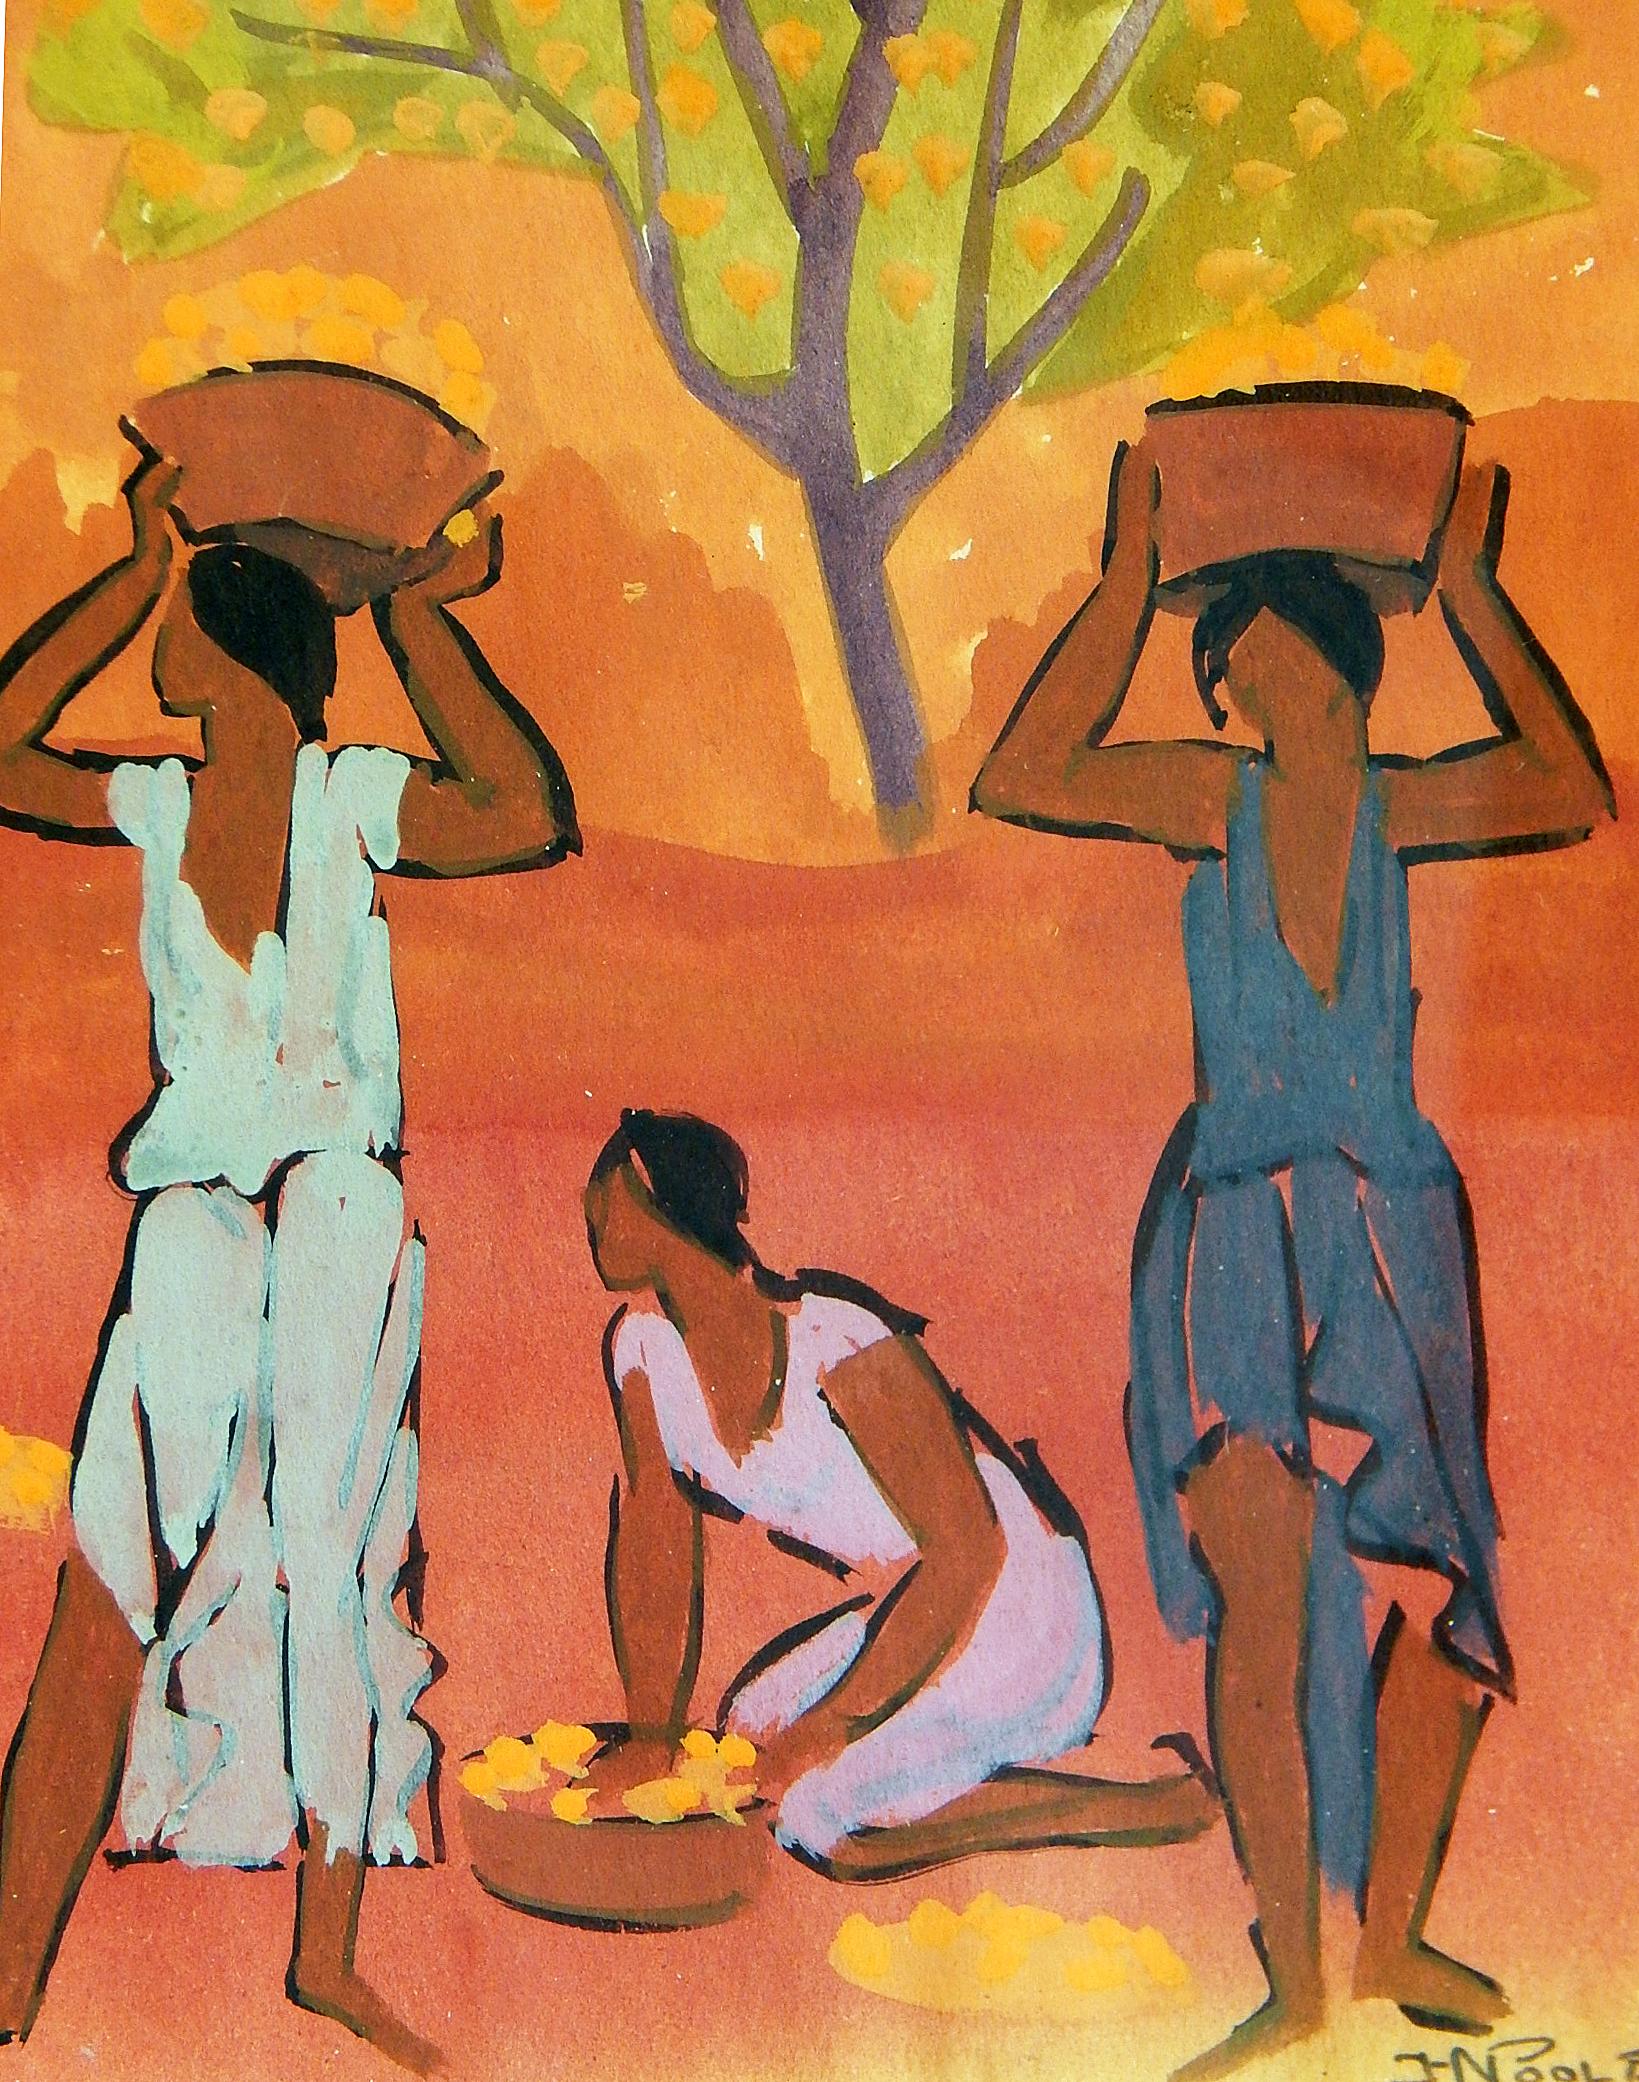 Diese in leuchtenden Farben gehaltene Gouache von Horatio Nelson Poole, der für seine Szenen aus Hawaii und Kalifornien berühmt ist, zeigt eine Gruppe von Frauen, die Obst pflücken, wahrscheinlich Orangen oder Zitronen, und deren Körbe von ihrer